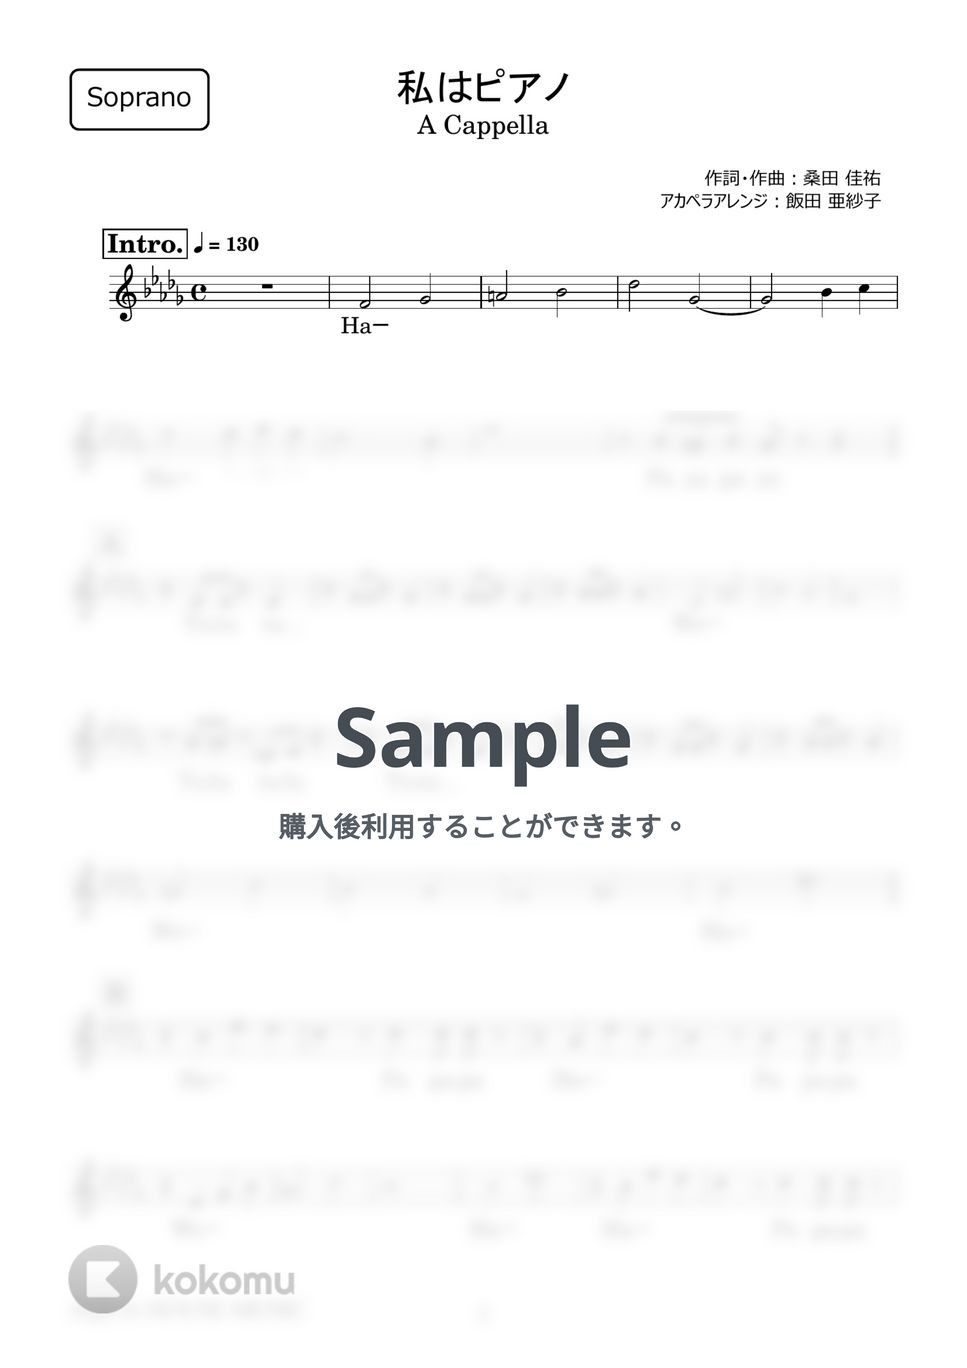 高田 みづえ - 私はピアノ (アカペラ楽譜♪Sopranoパート譜) by 飯田 亜紗子